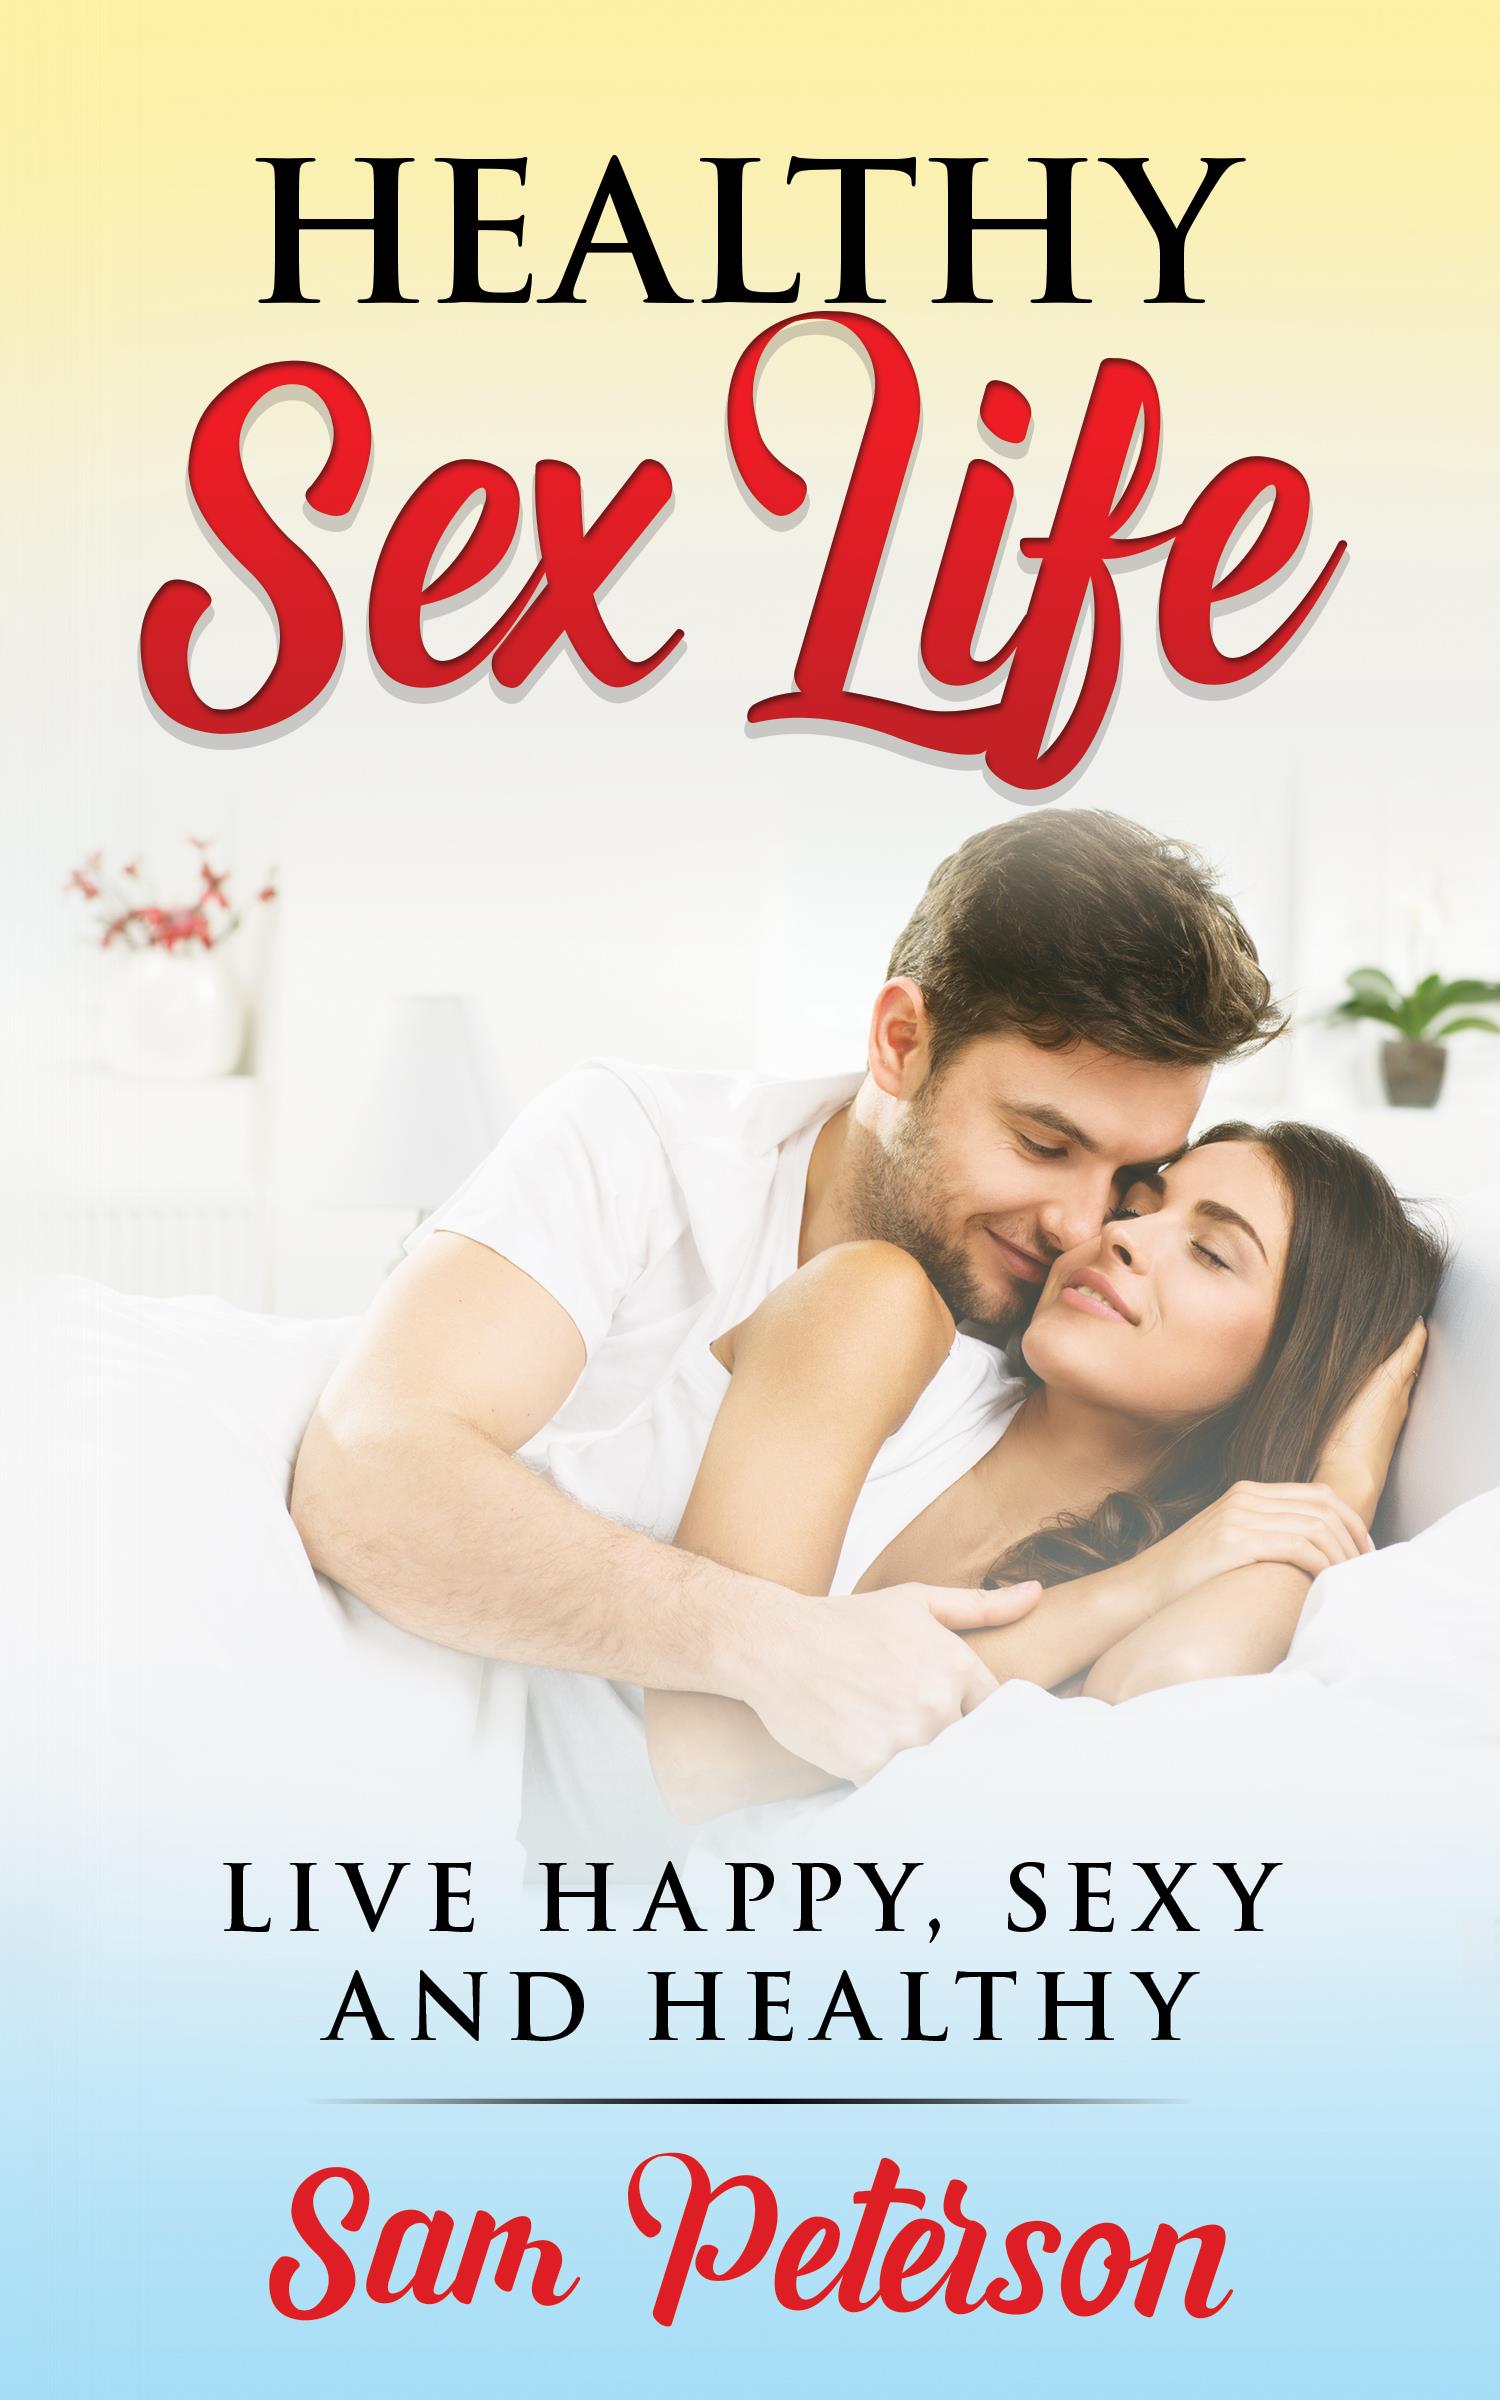 Healthy sex life